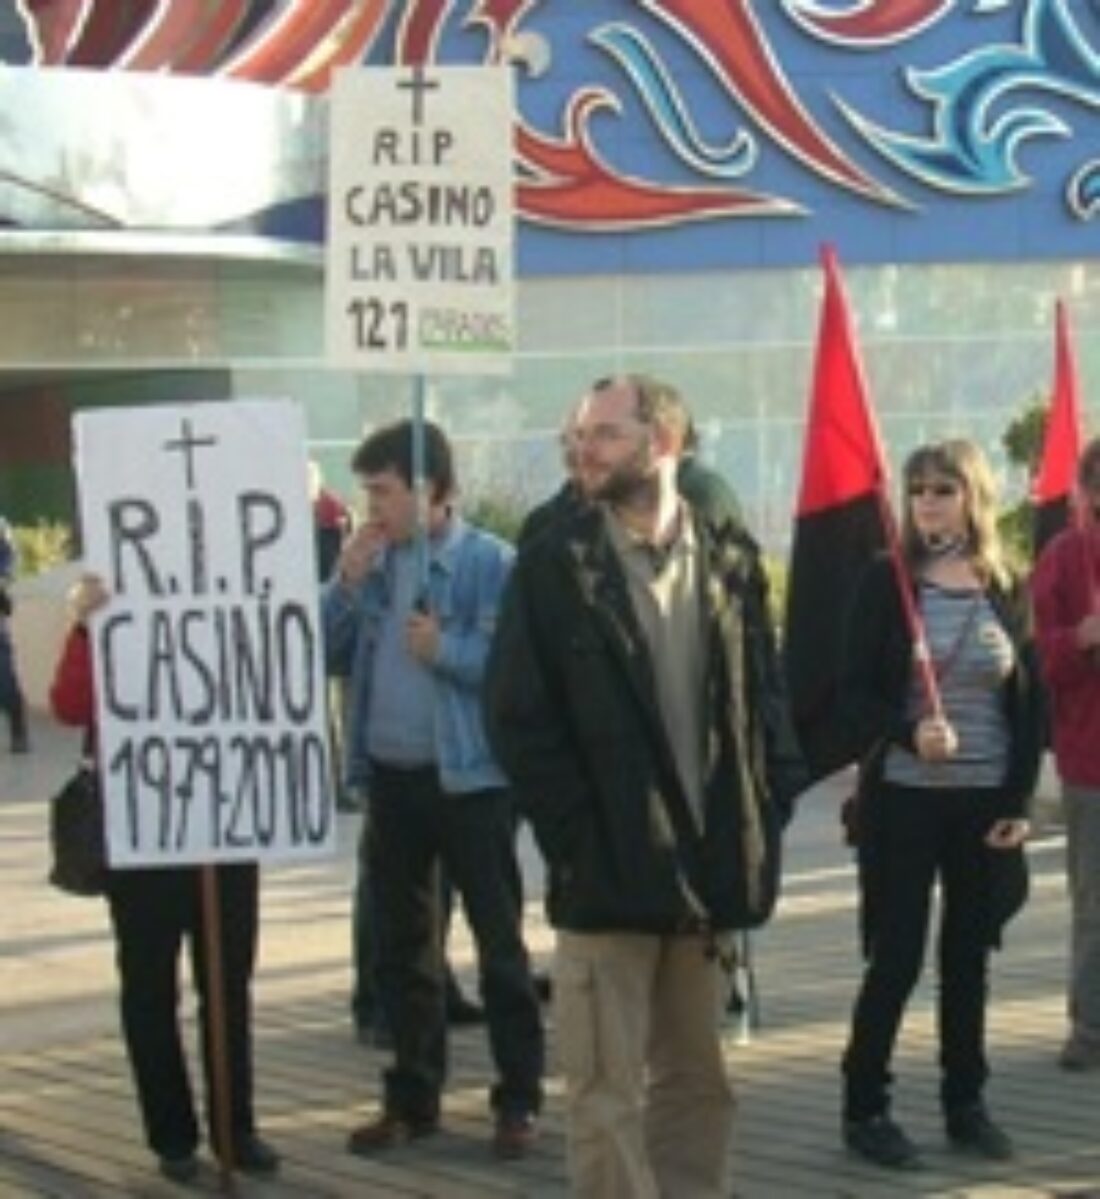 15 abril, Valencia : Actos contra los despidos masivos en el Casino de la Vila